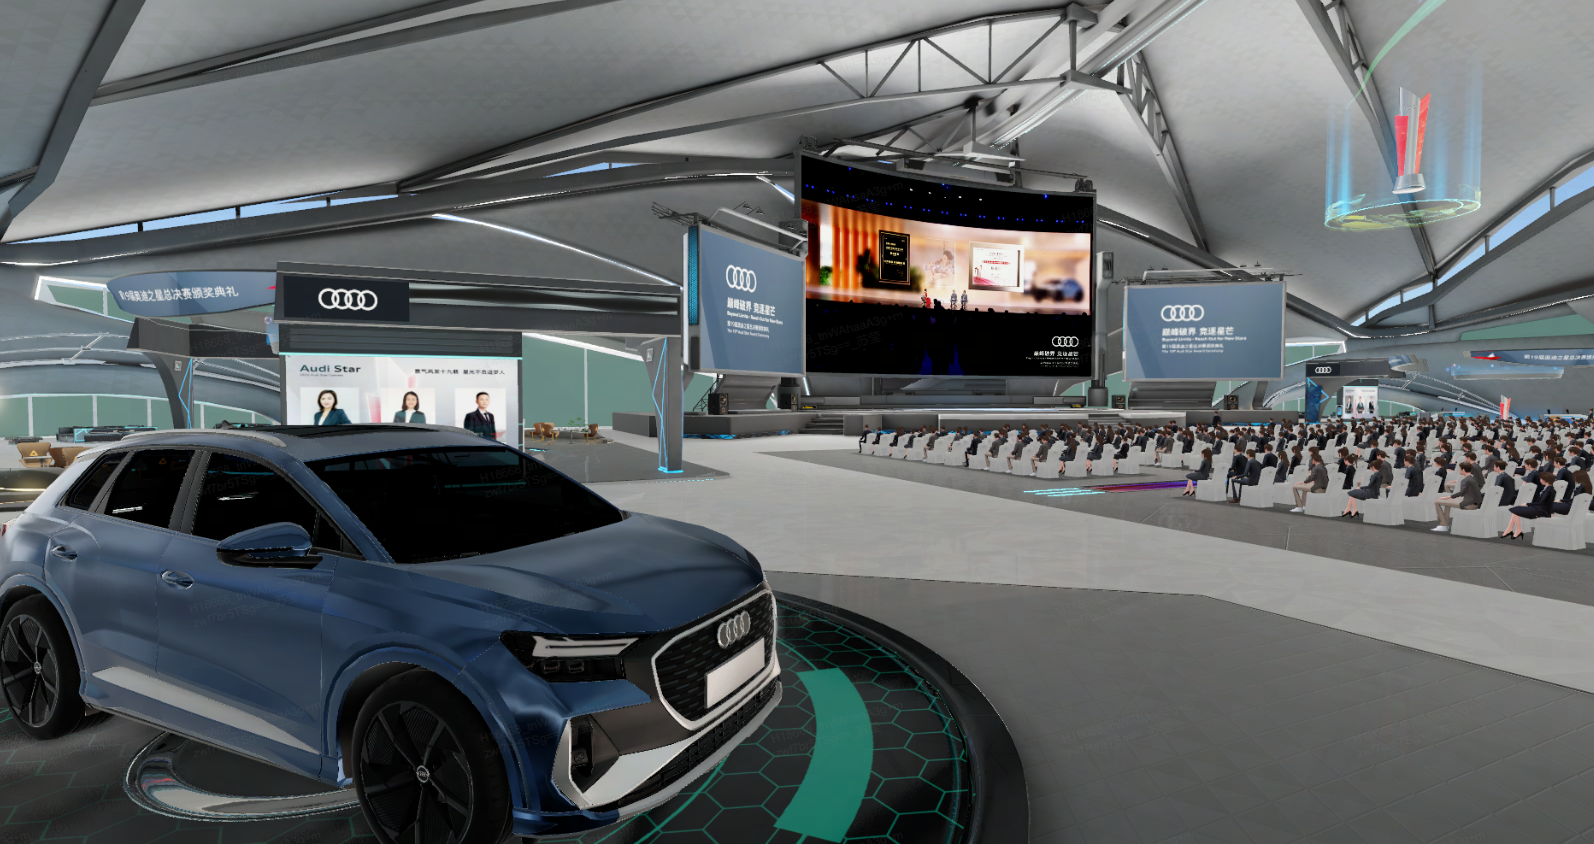 图片展示一辆蓝色奥迪汽车在现代展厅内，周围有座椅和大屏幕，环境科技感强，似乎是车展或产品发布会场景。